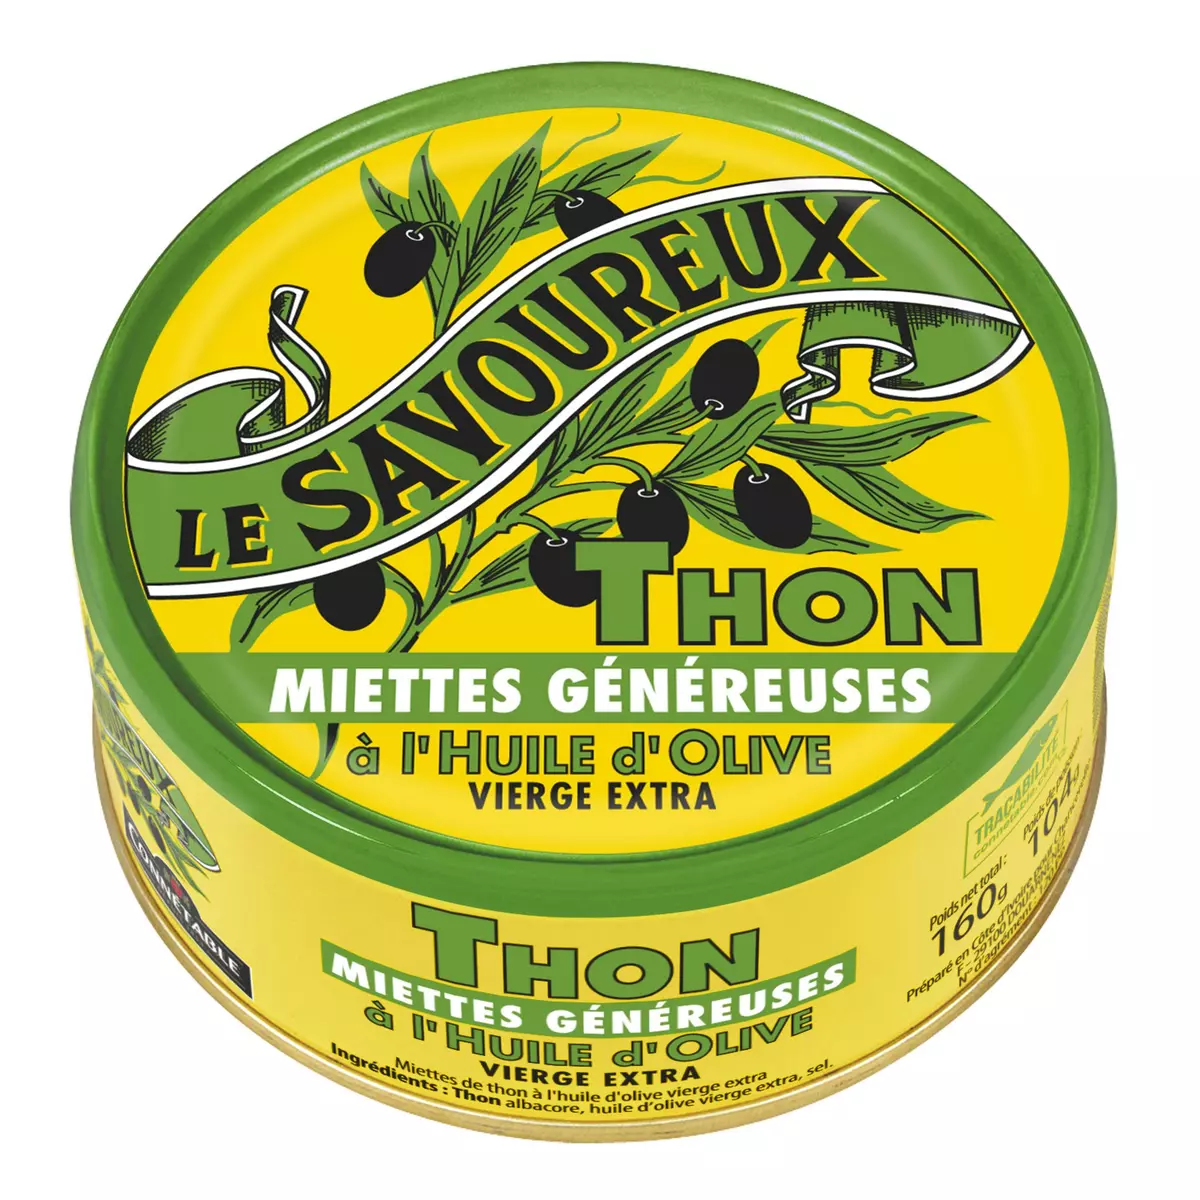 LE SAVOUREUX Miettes de thon généreuses à l'huile d'olive vierge extra 160g